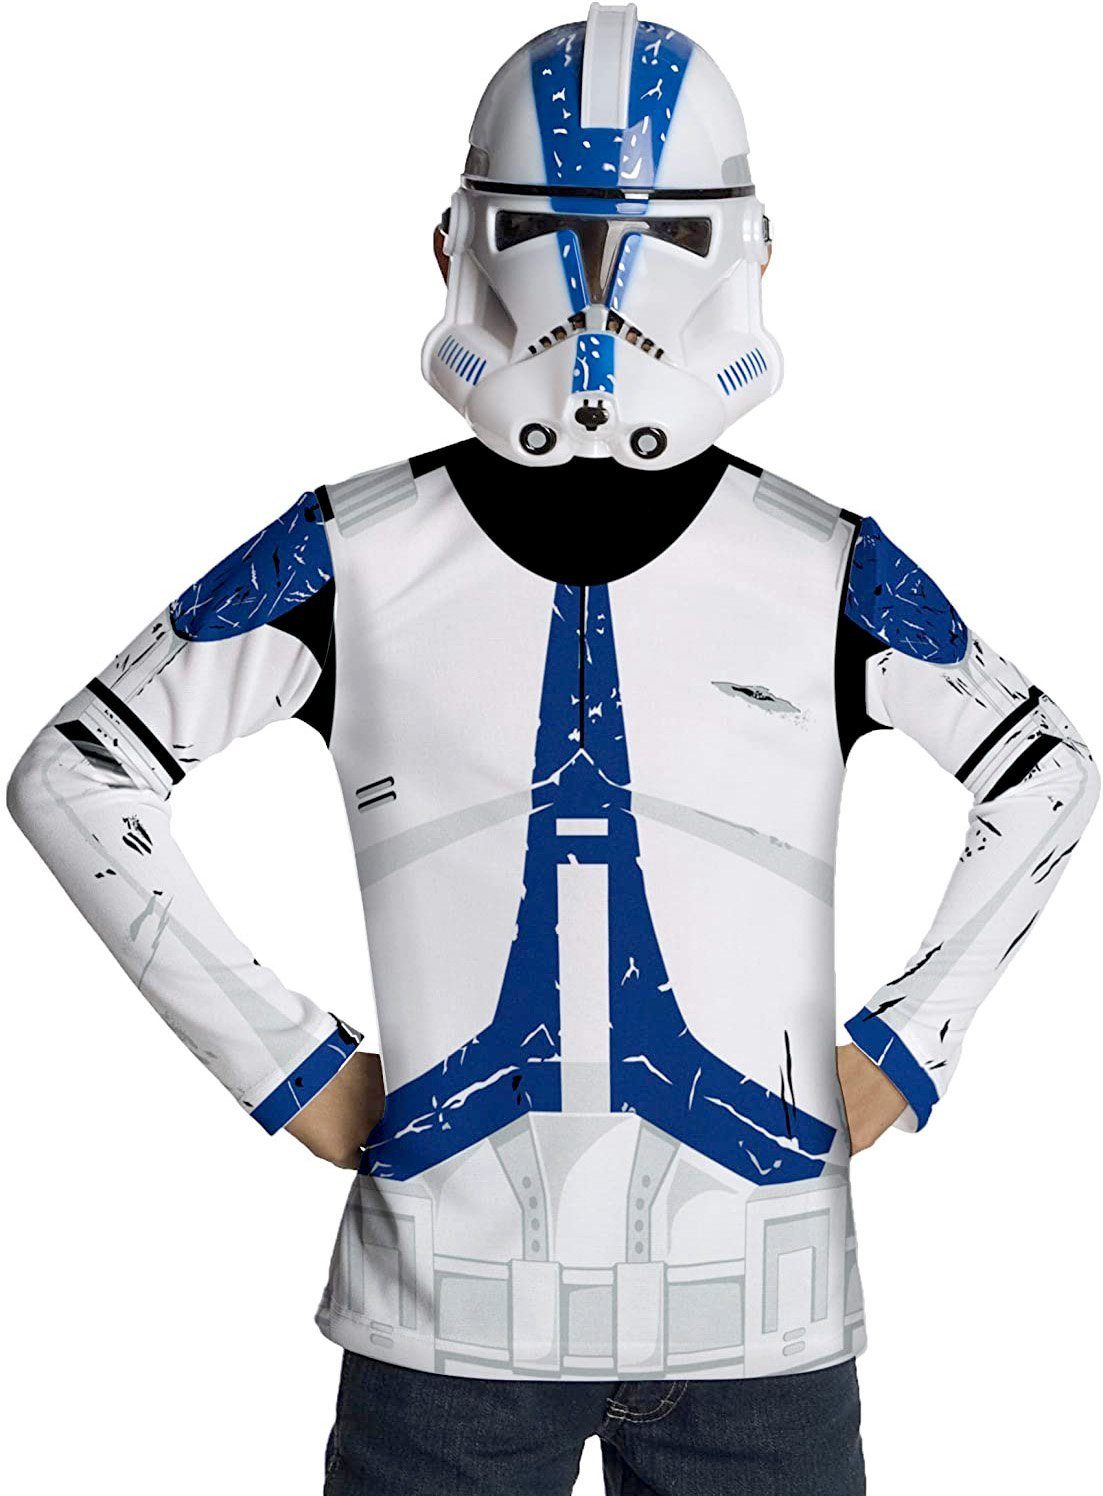 Rubie´s Kostüm Star Wars Clone Trooper Kostümset für Kinder, Schnell und easy verkleidet als Stromtrooper aus 'Clone Wars'